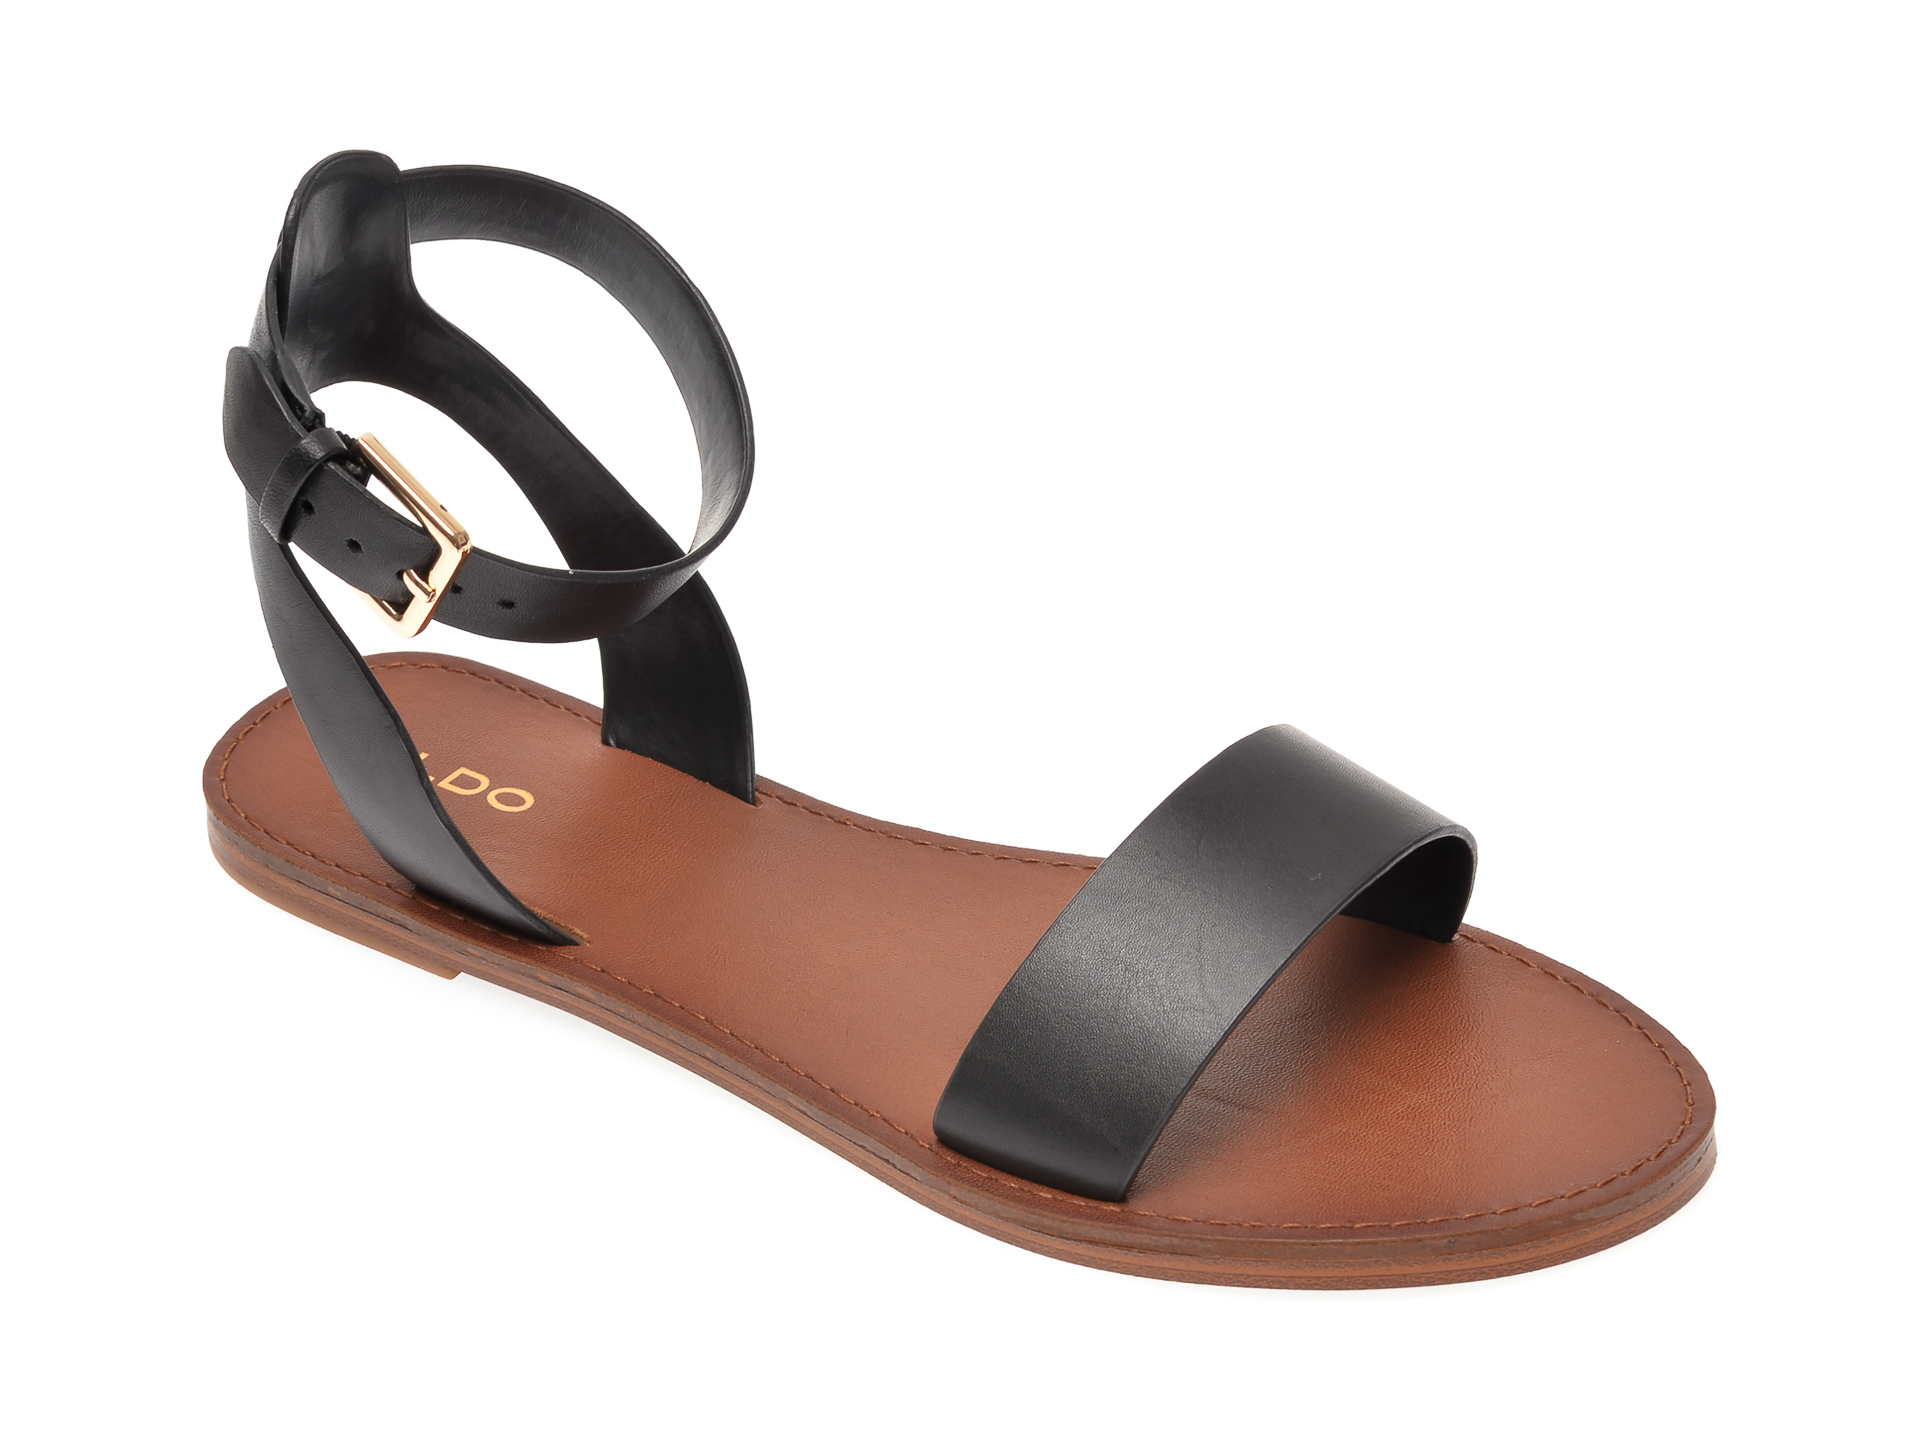 Sandale ALDO negre, Campodoro001, din piele naturala